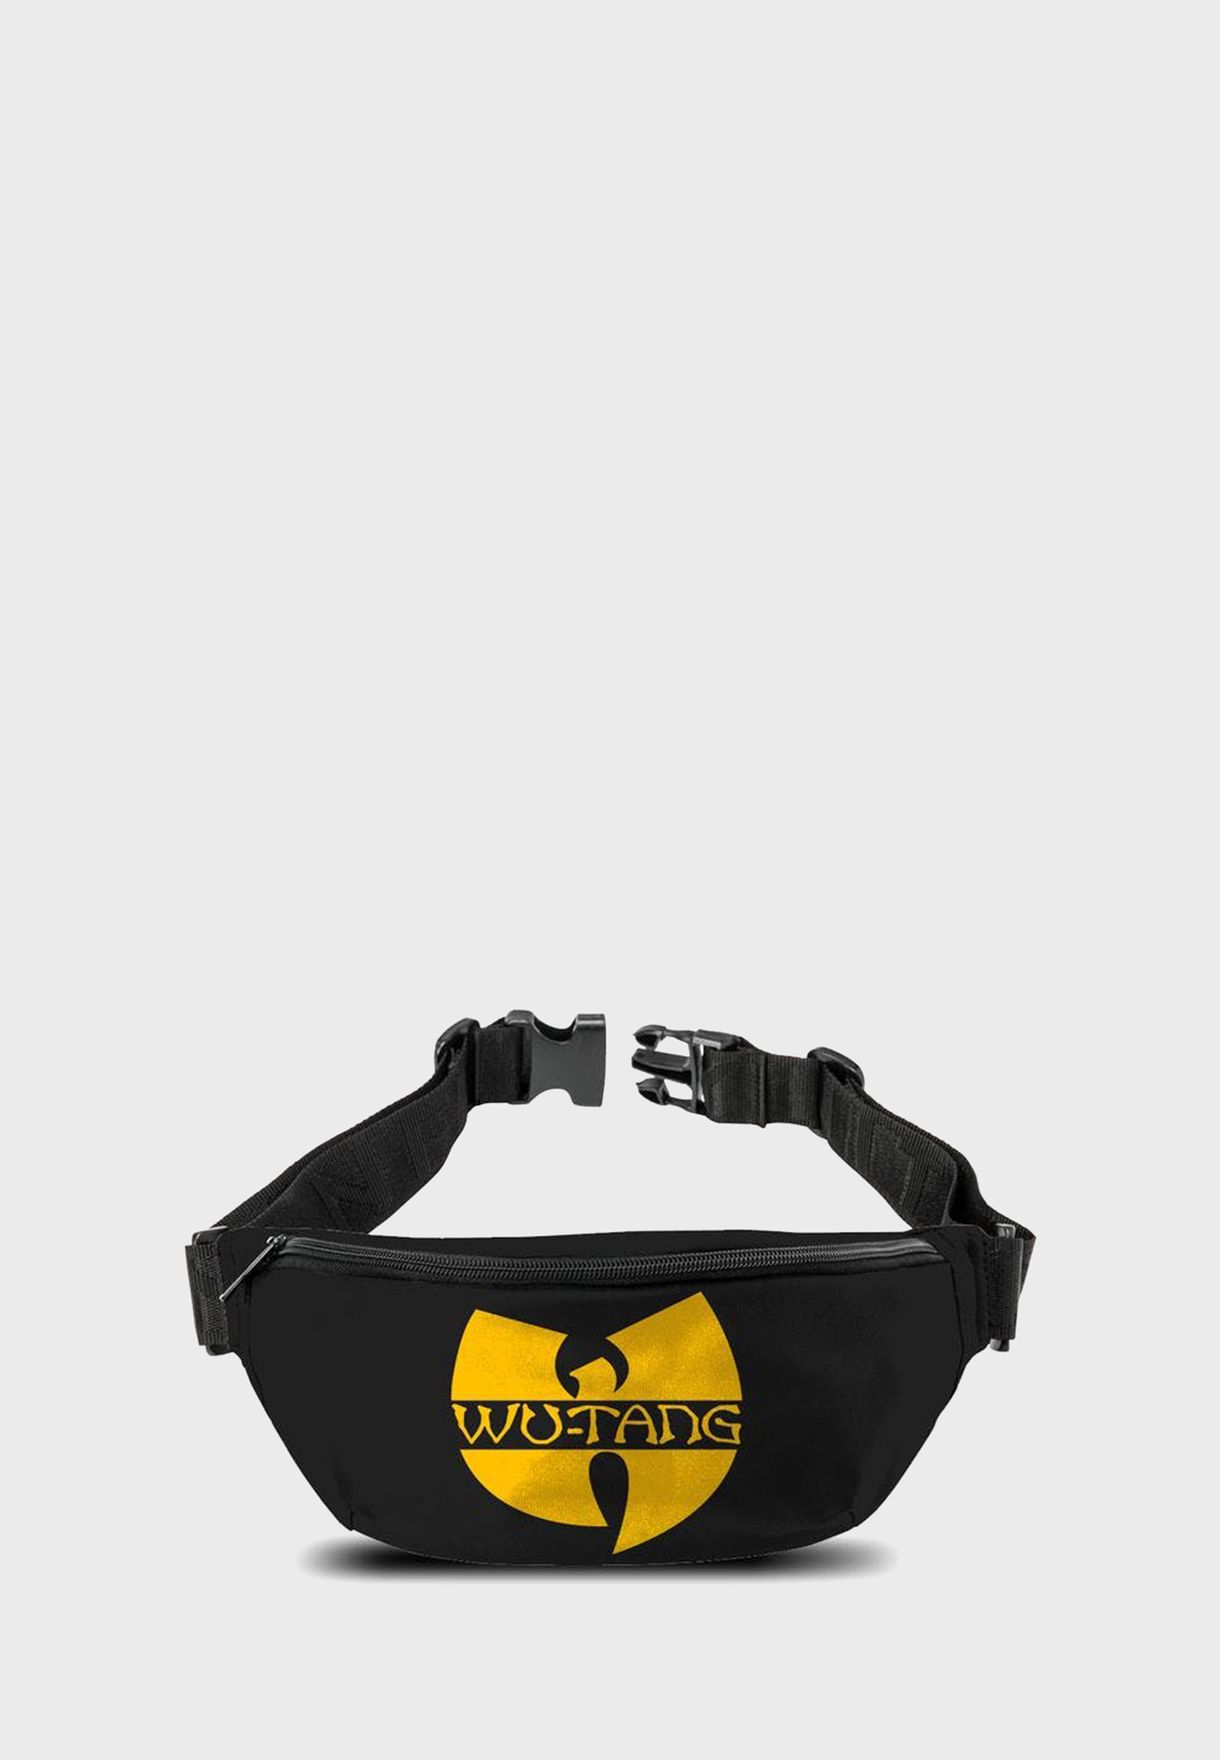 Logo Wu Tang Clan Bum Bag